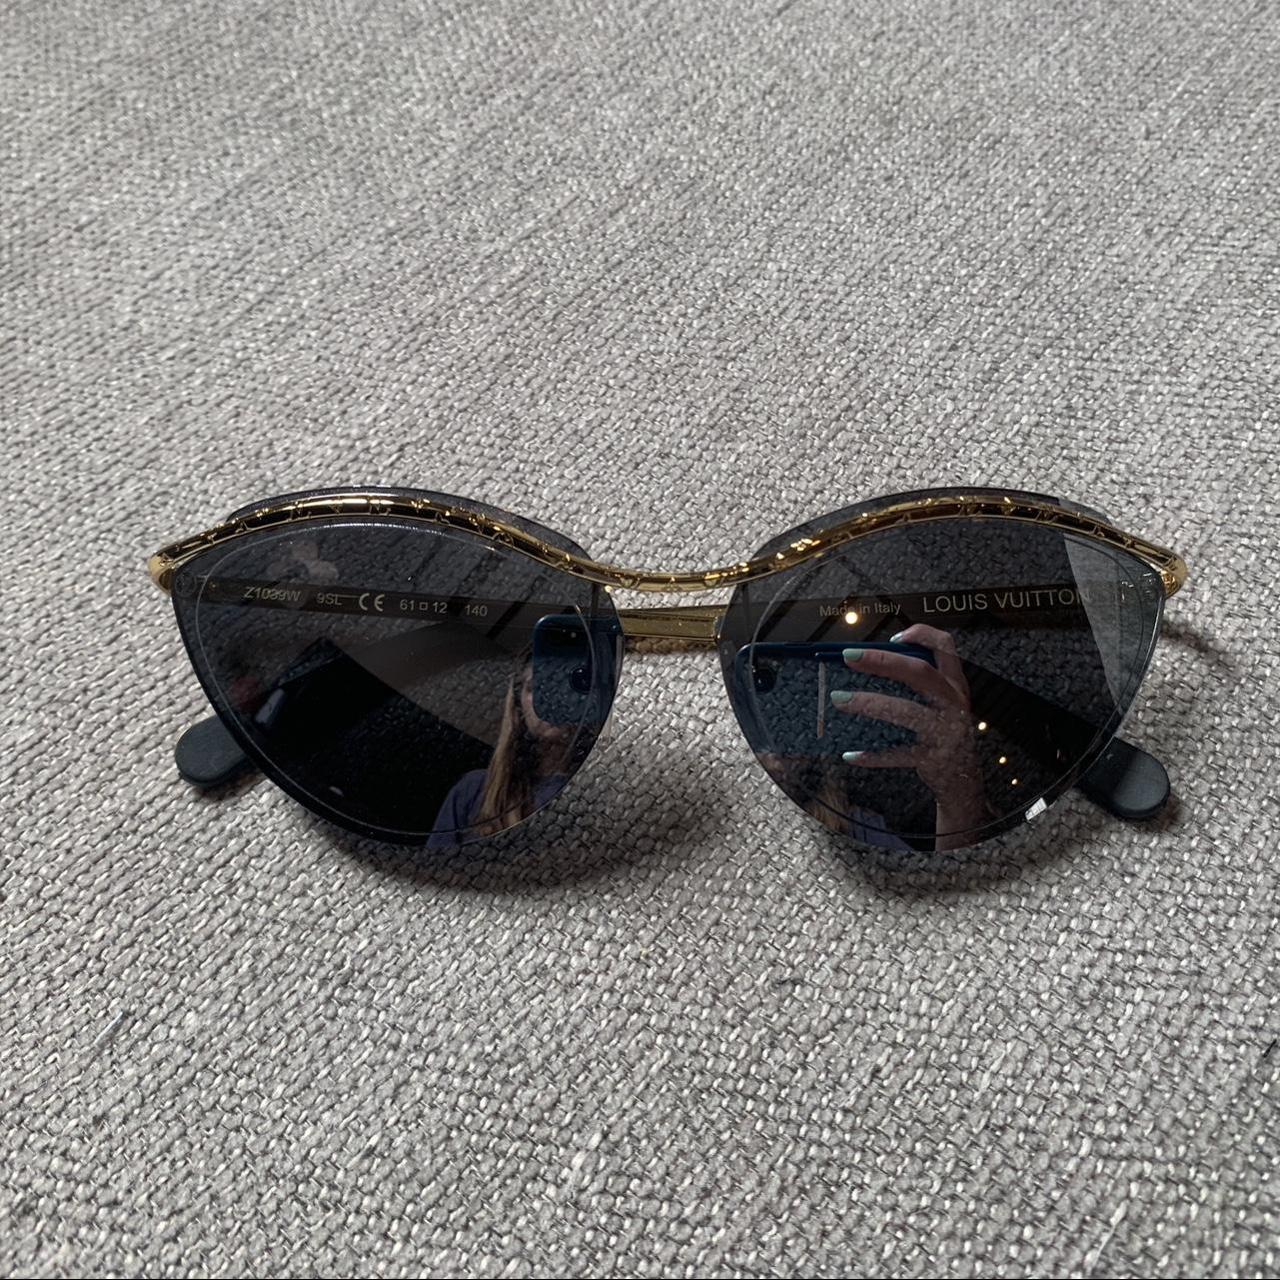 Authentic Women Louis Vuitton cat eye sunglasses . - Depop